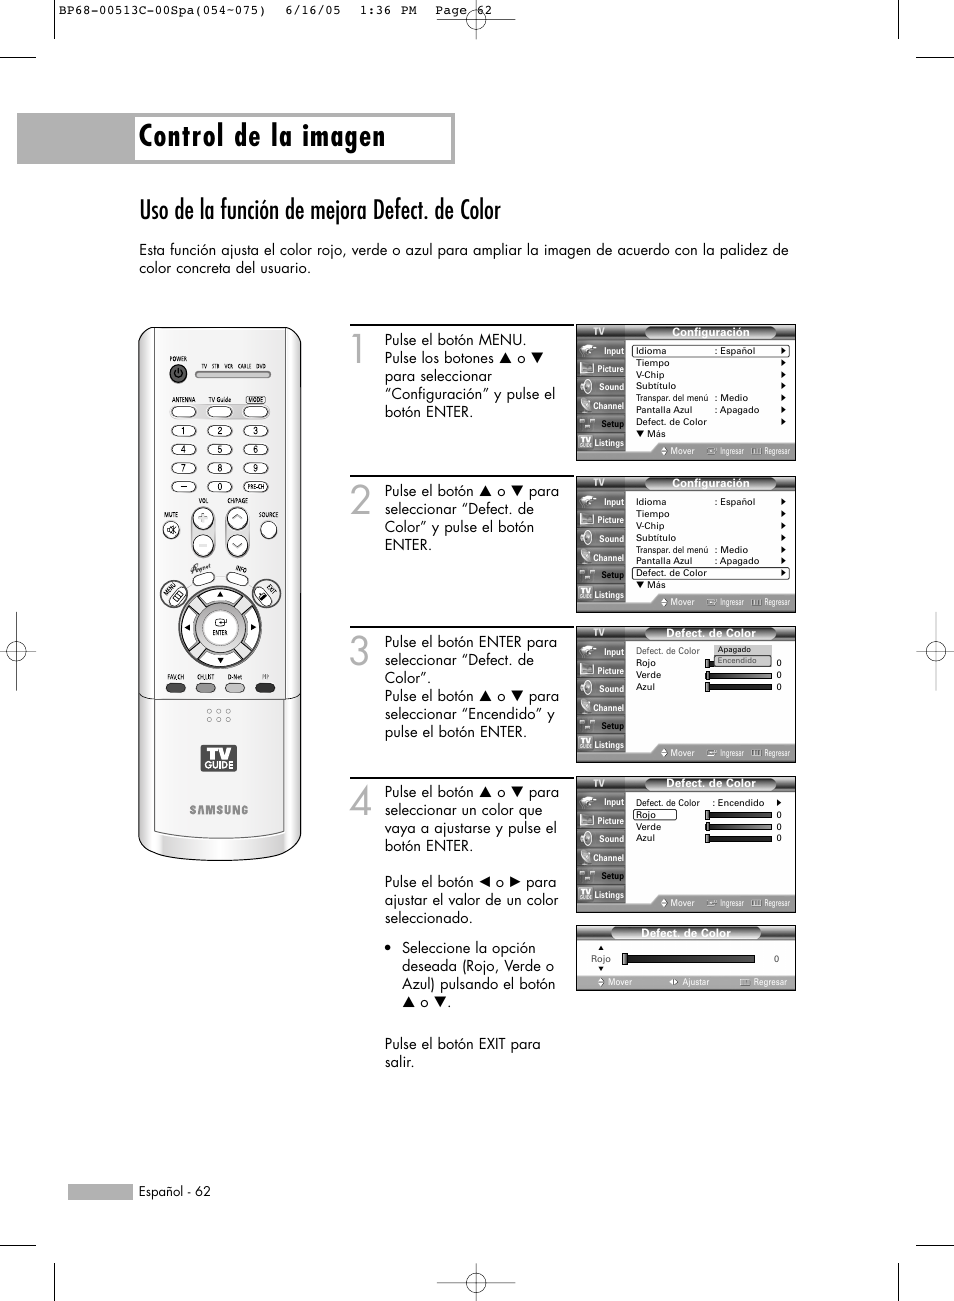 Control de la imagen, Uso de la función de mejora defect. de color | Samsung HL-R5078W Manual del usuario | Página 62 / 144